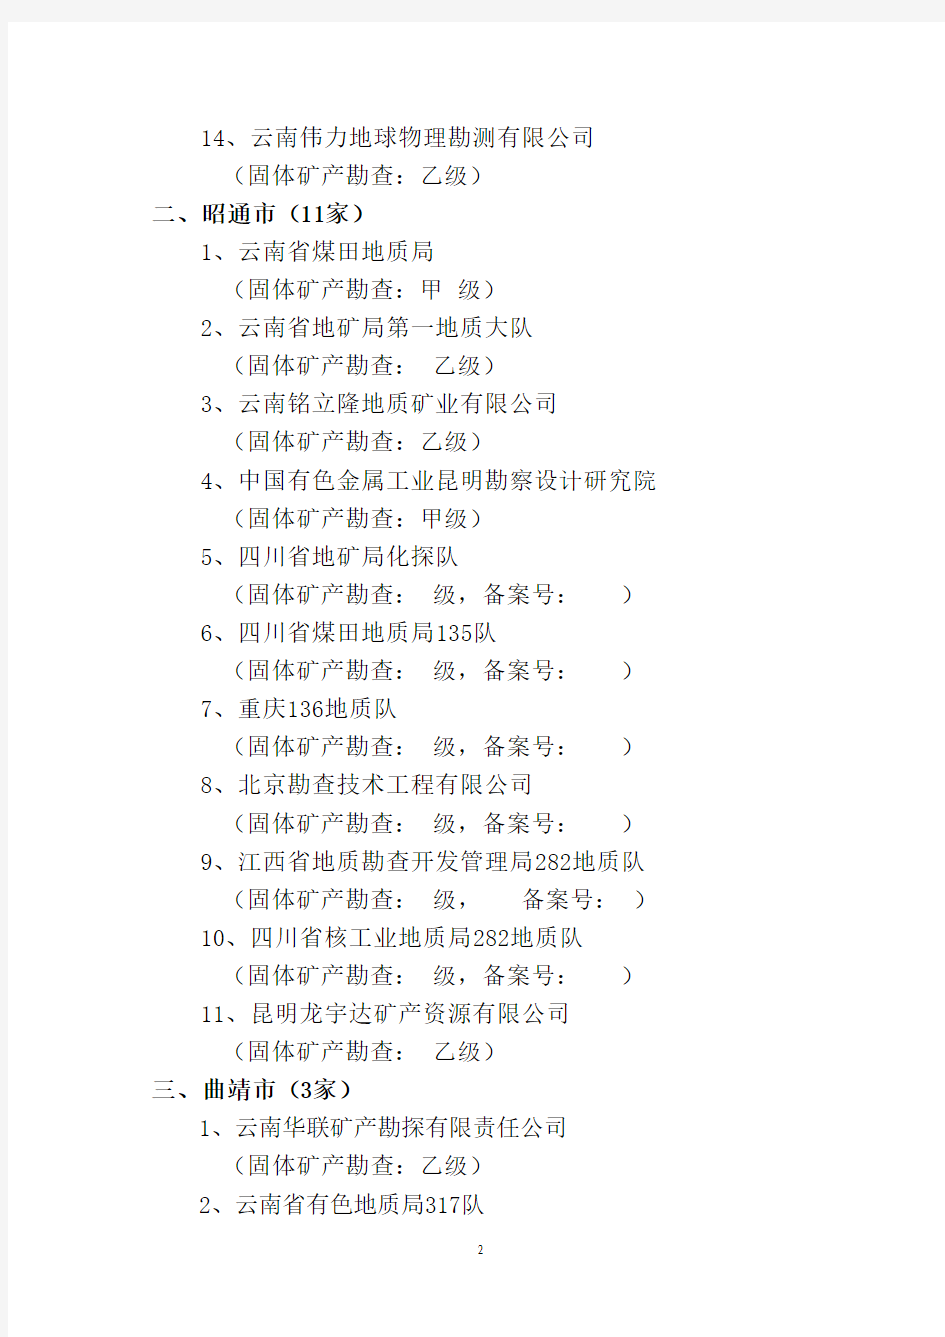 拟从事云南省矿山储量动态测量机构名单20130530